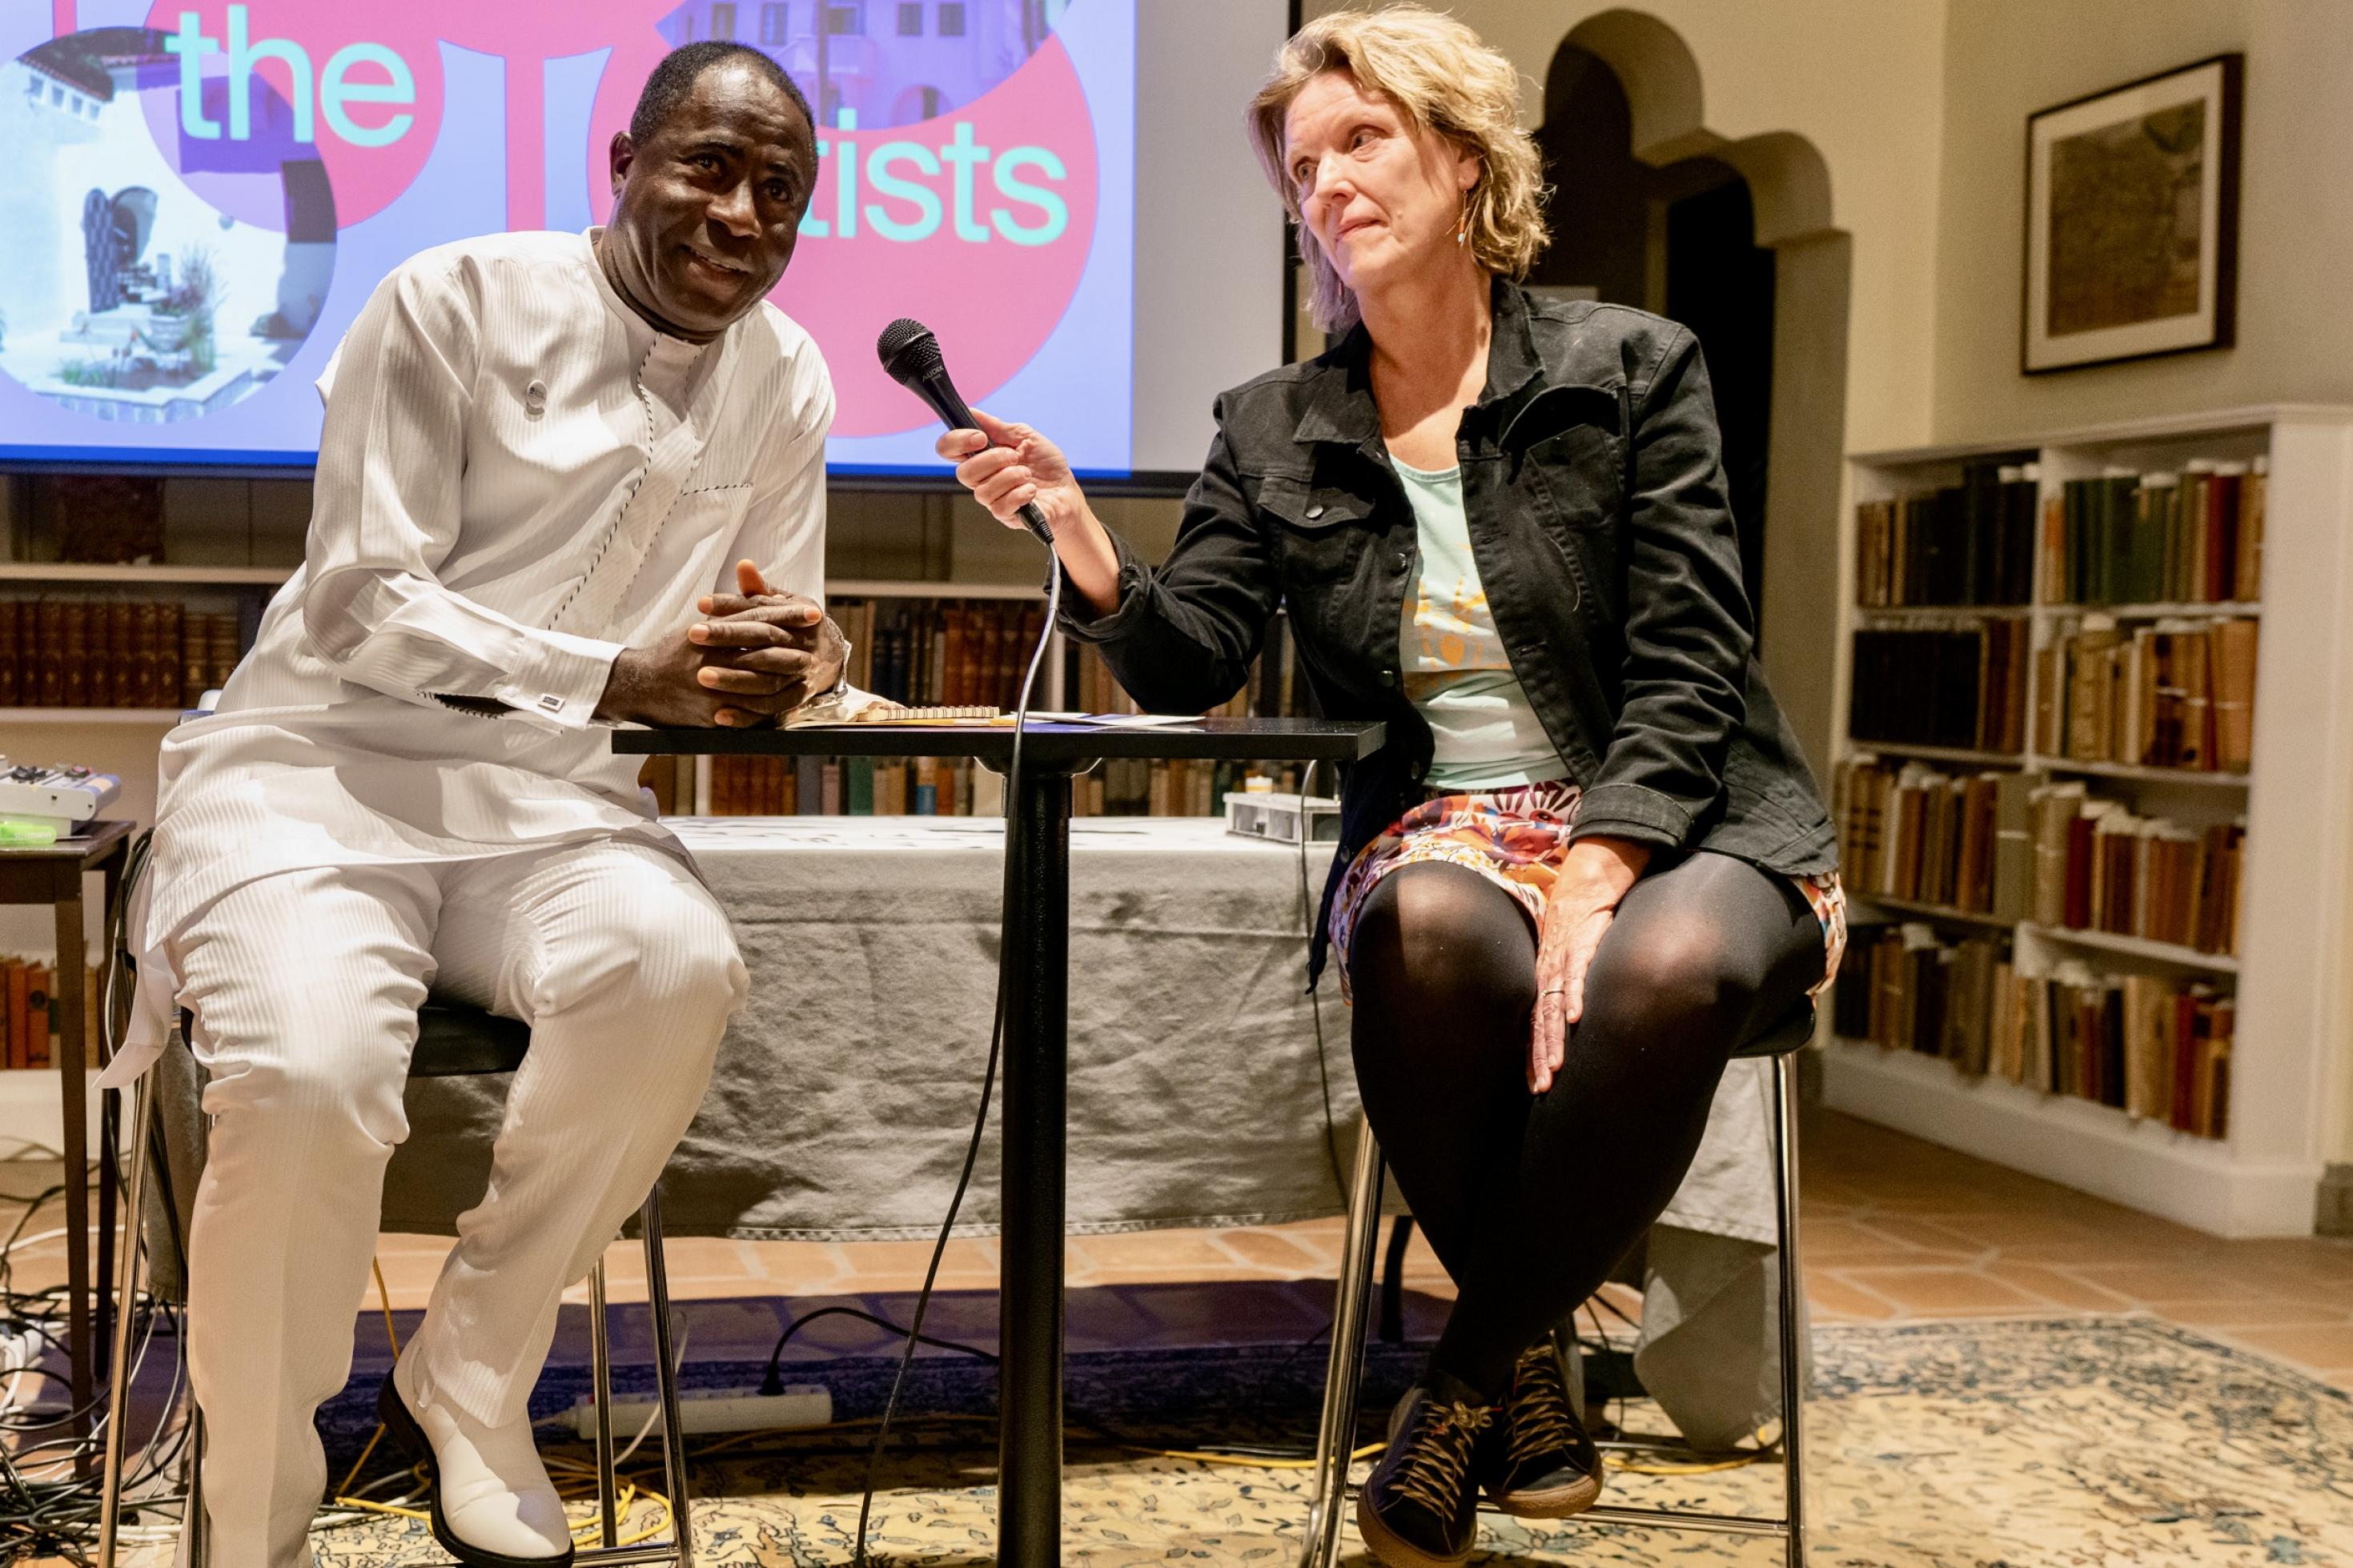 Der nigerianische Journalist Eric Ojo im Gespräch mit einer Journalistin. Sie sitzen sich an einem Tisch gegenüber, dem Publikum zugewandt, im Hintergrund eine Projektion mit der Aufschrift „Meet The Artists“